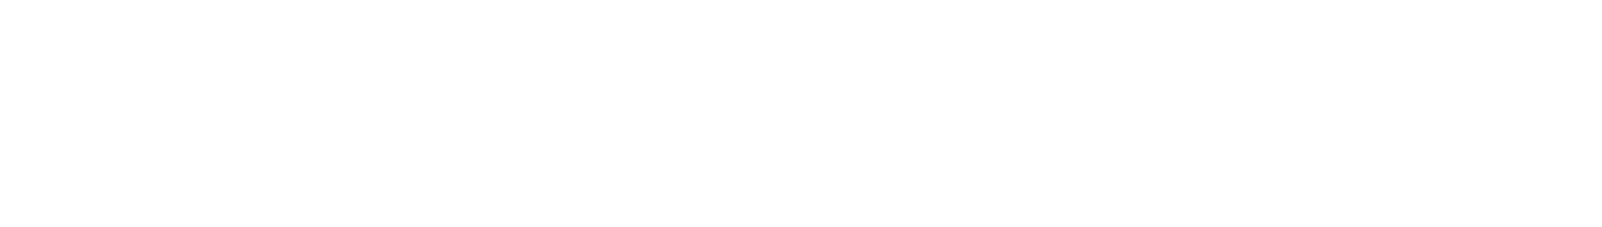 Peab logo grand pour les fonds sombres (PNG transparent)